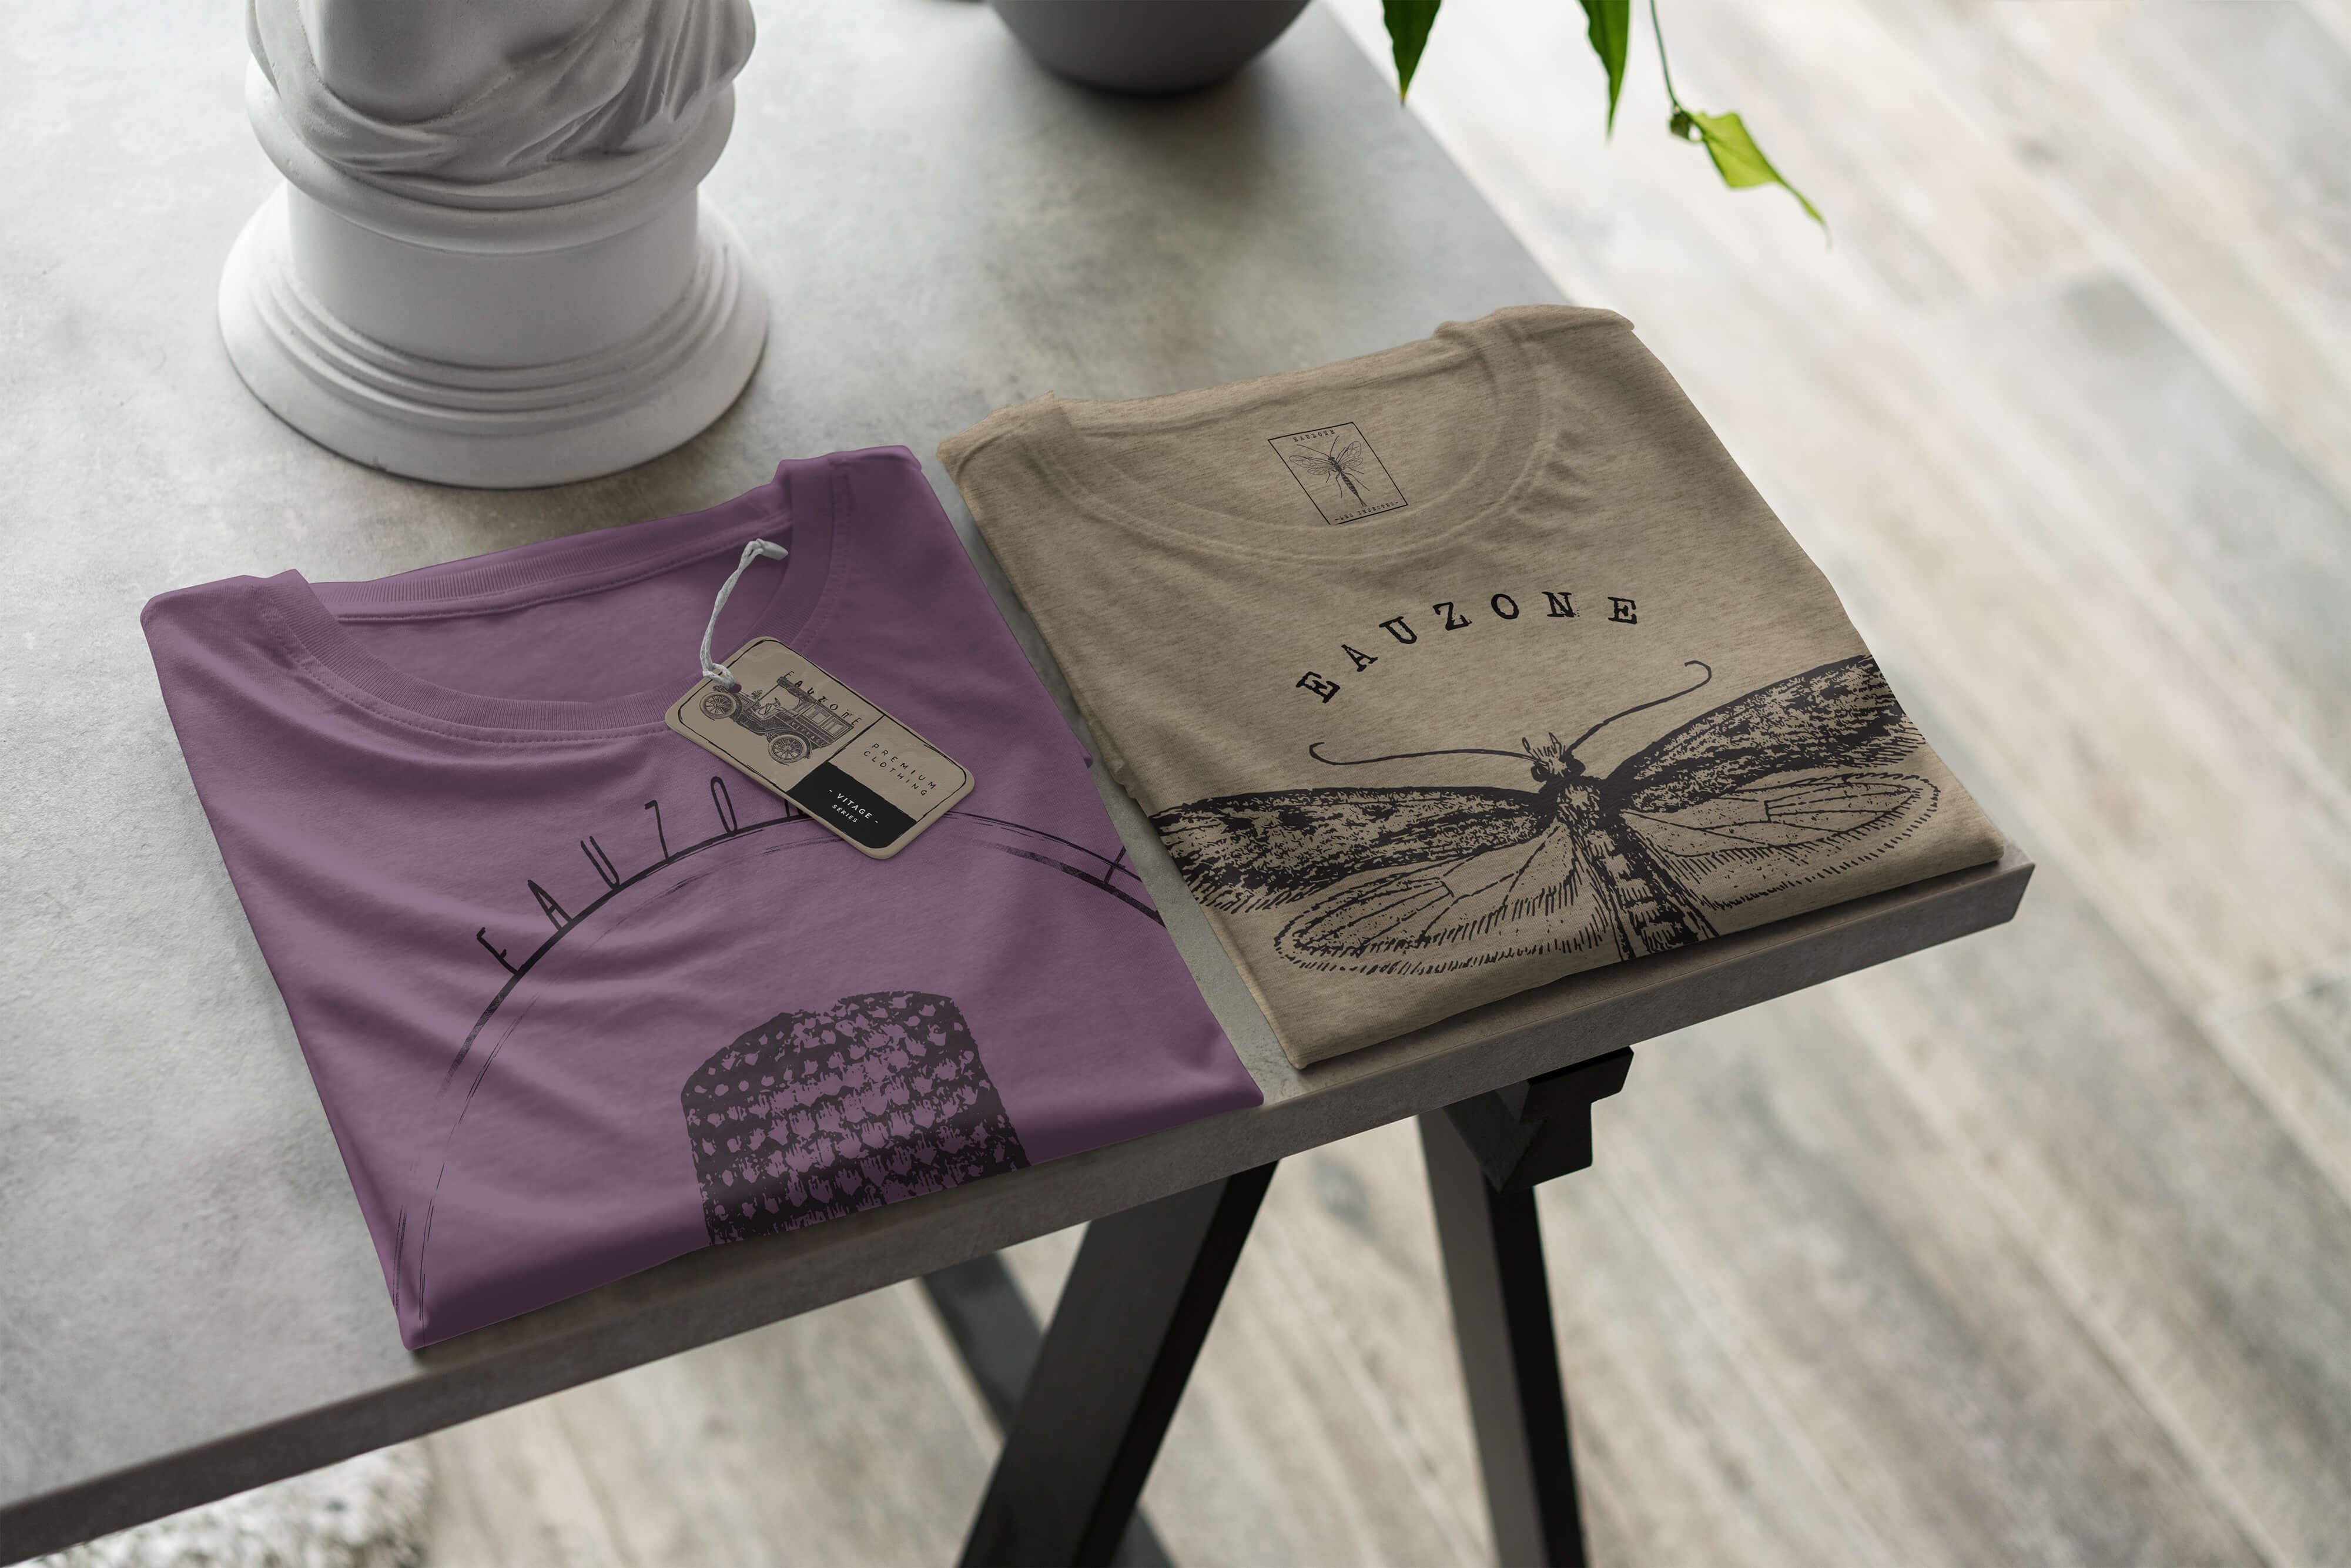 T-Shirt Fingerhut Vintage Art Herren T-Shirt Sinus Shiraz